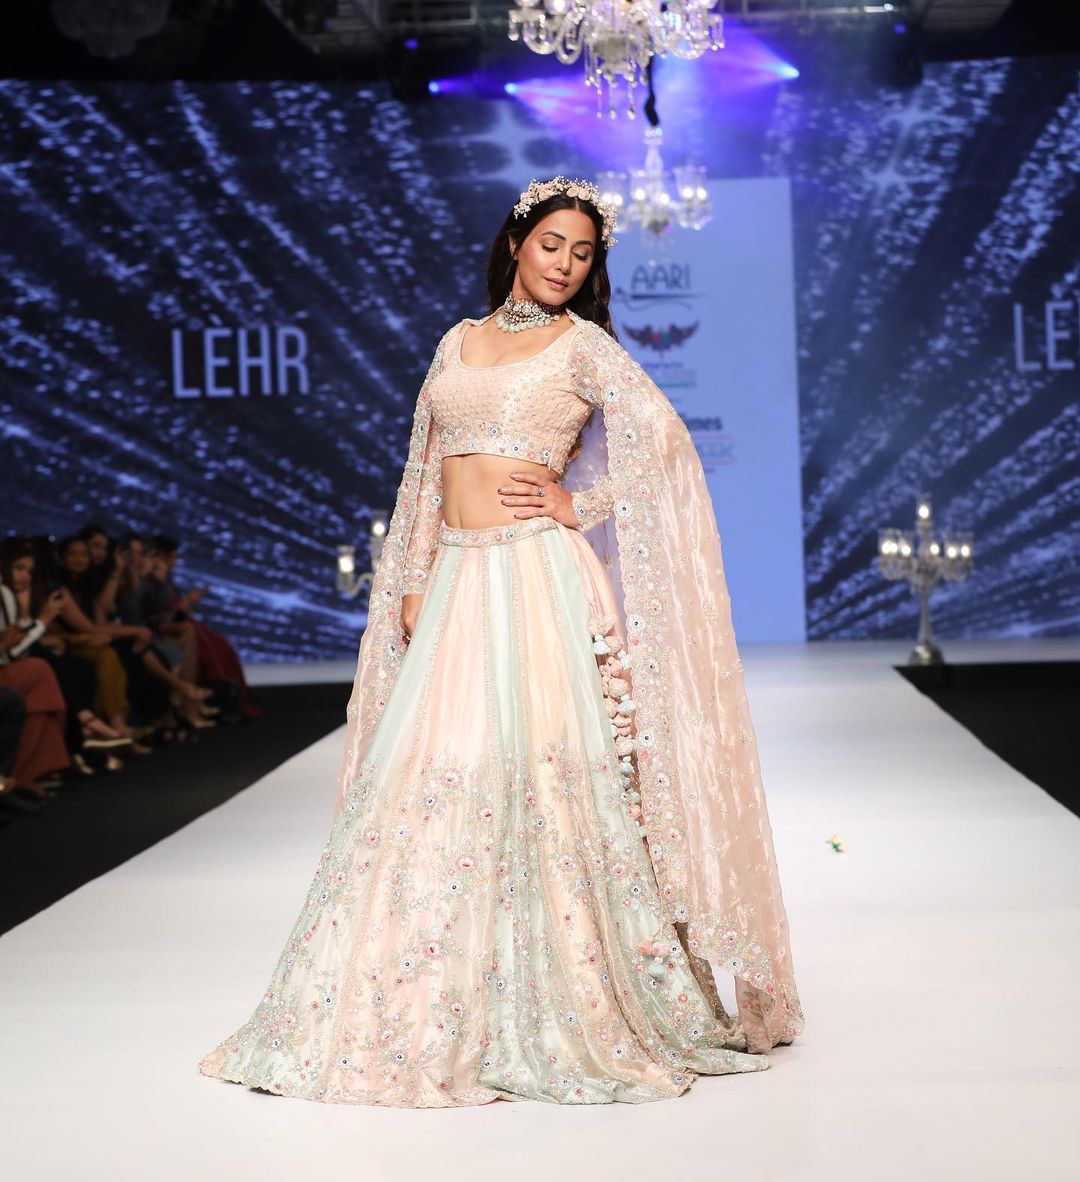 Hina Khan टाइम्स फैशन वीक में कैटवॉक करती आई नज़र, लहंगे में दिखा खूबसूरत अंदाज देखें Latest Photos